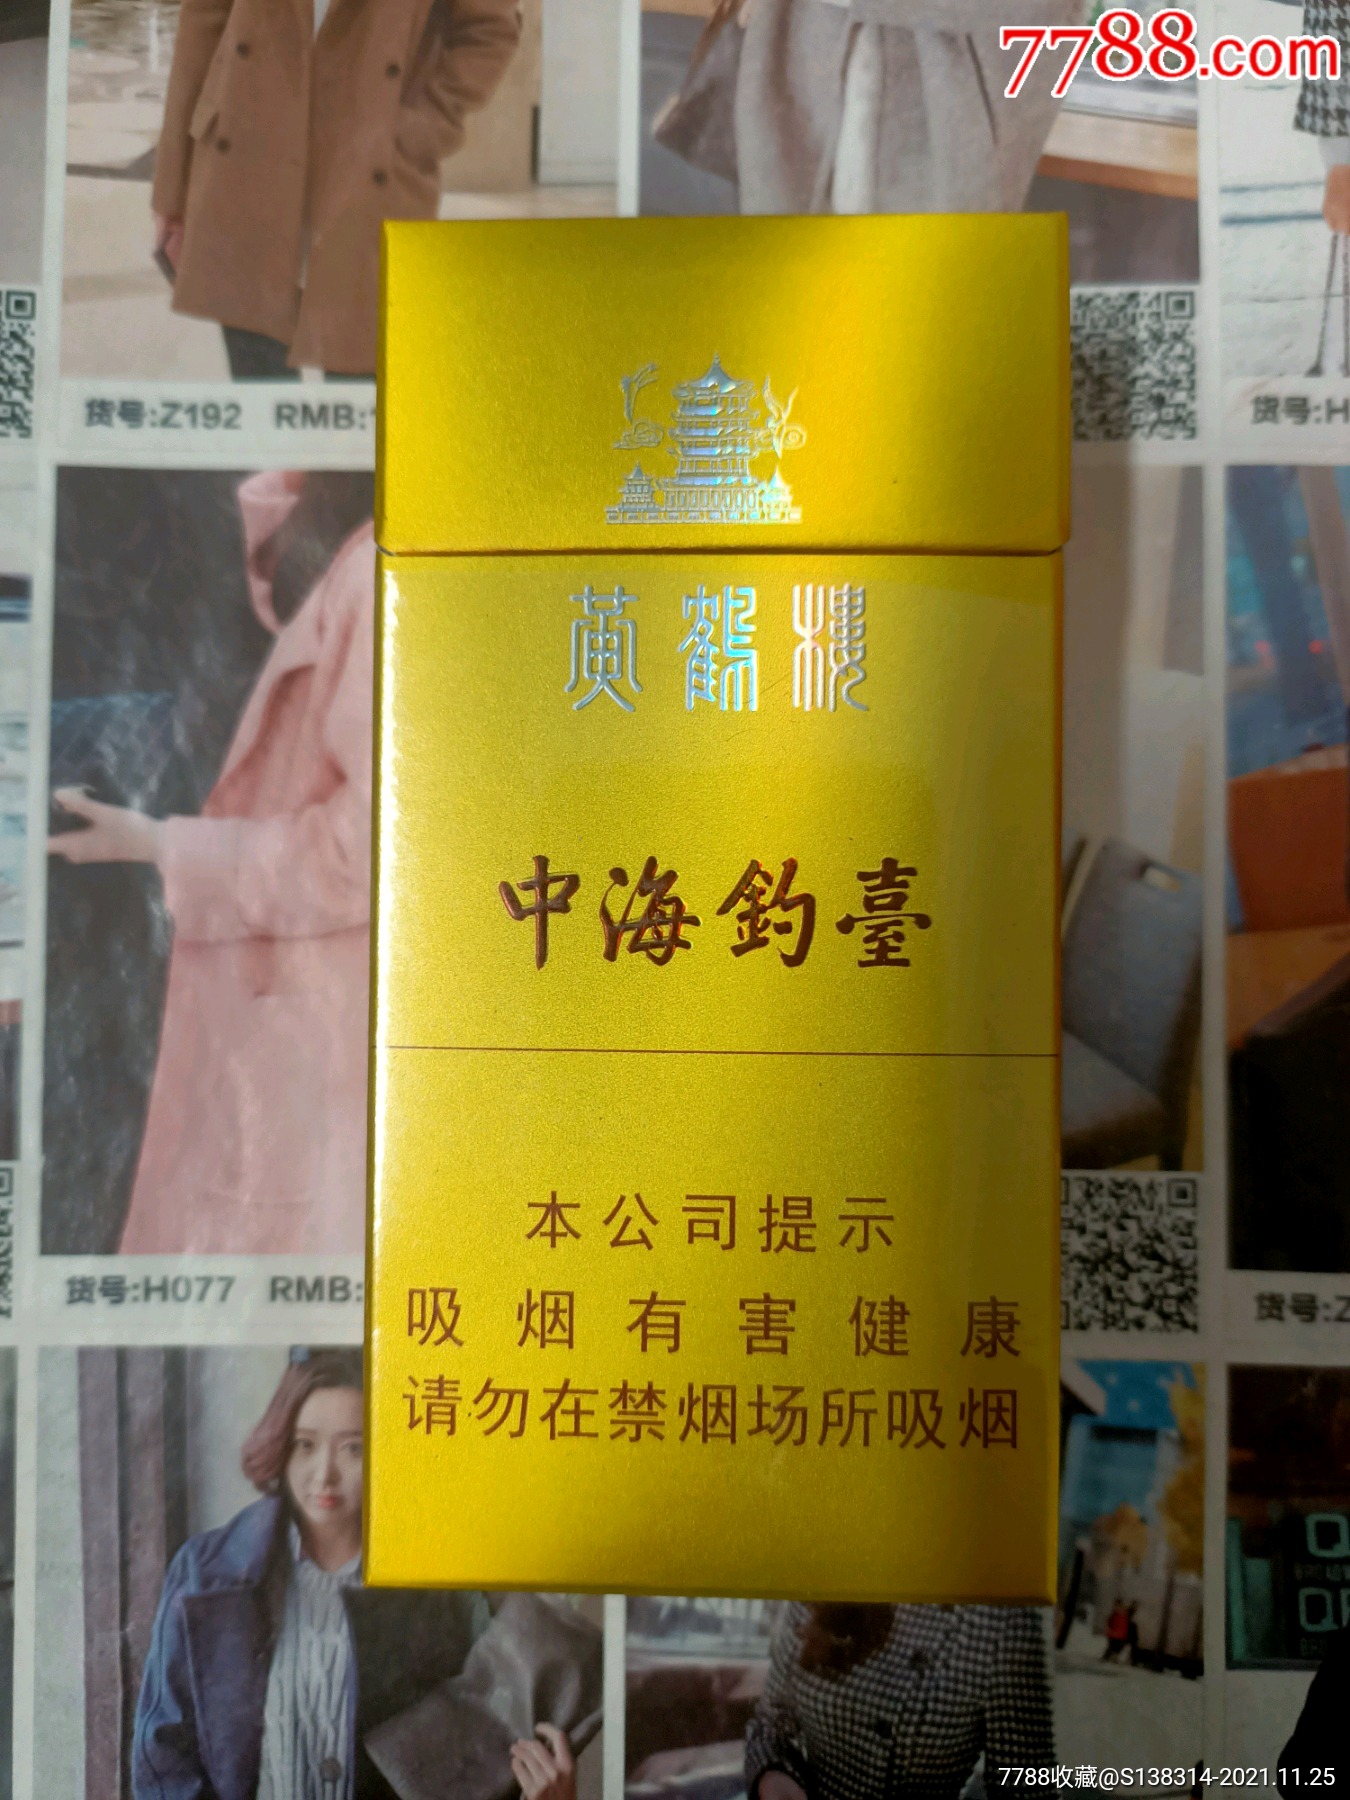 中海钓台香烟价格表图片